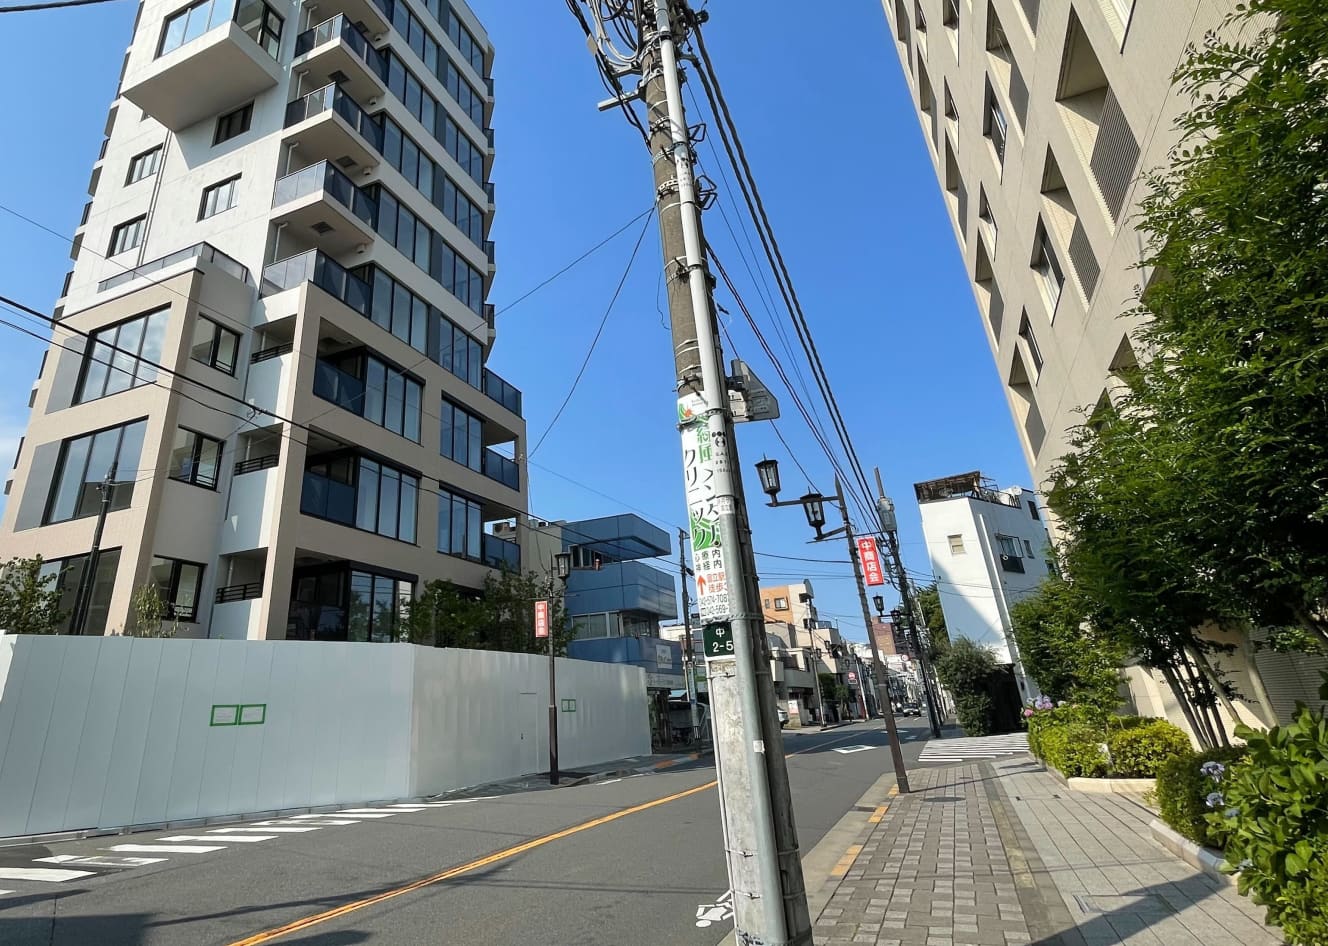 マンション前の「富士見通り」は画面奥側に向かってJR中央線の国立駅へとのびている。すでに植栽を含む外構の撤去が始まっており、マンション前の歩道はすれ違うのがやっとの狭さだ